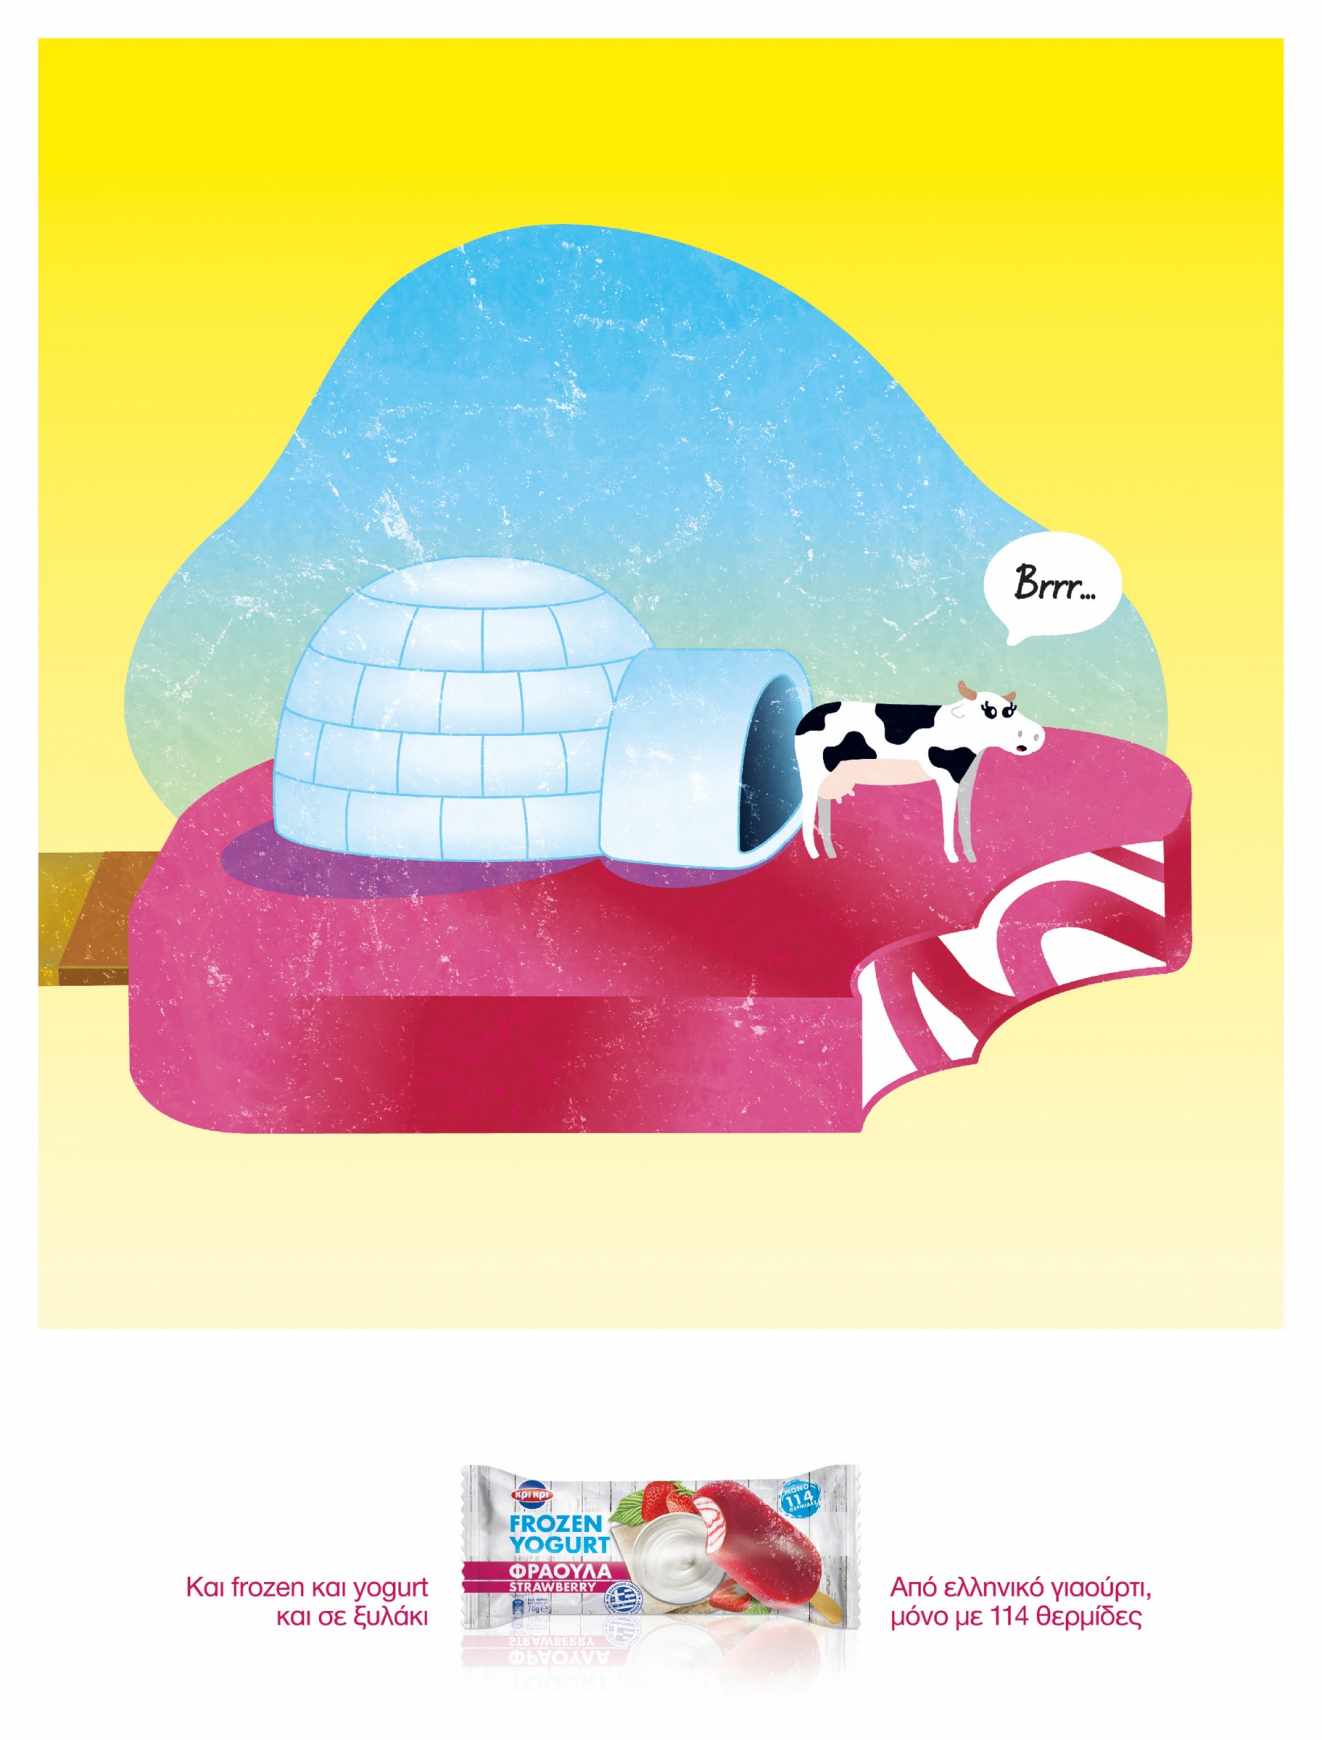 雅典Kri Kri Frozen Yoghurt平面广告设计